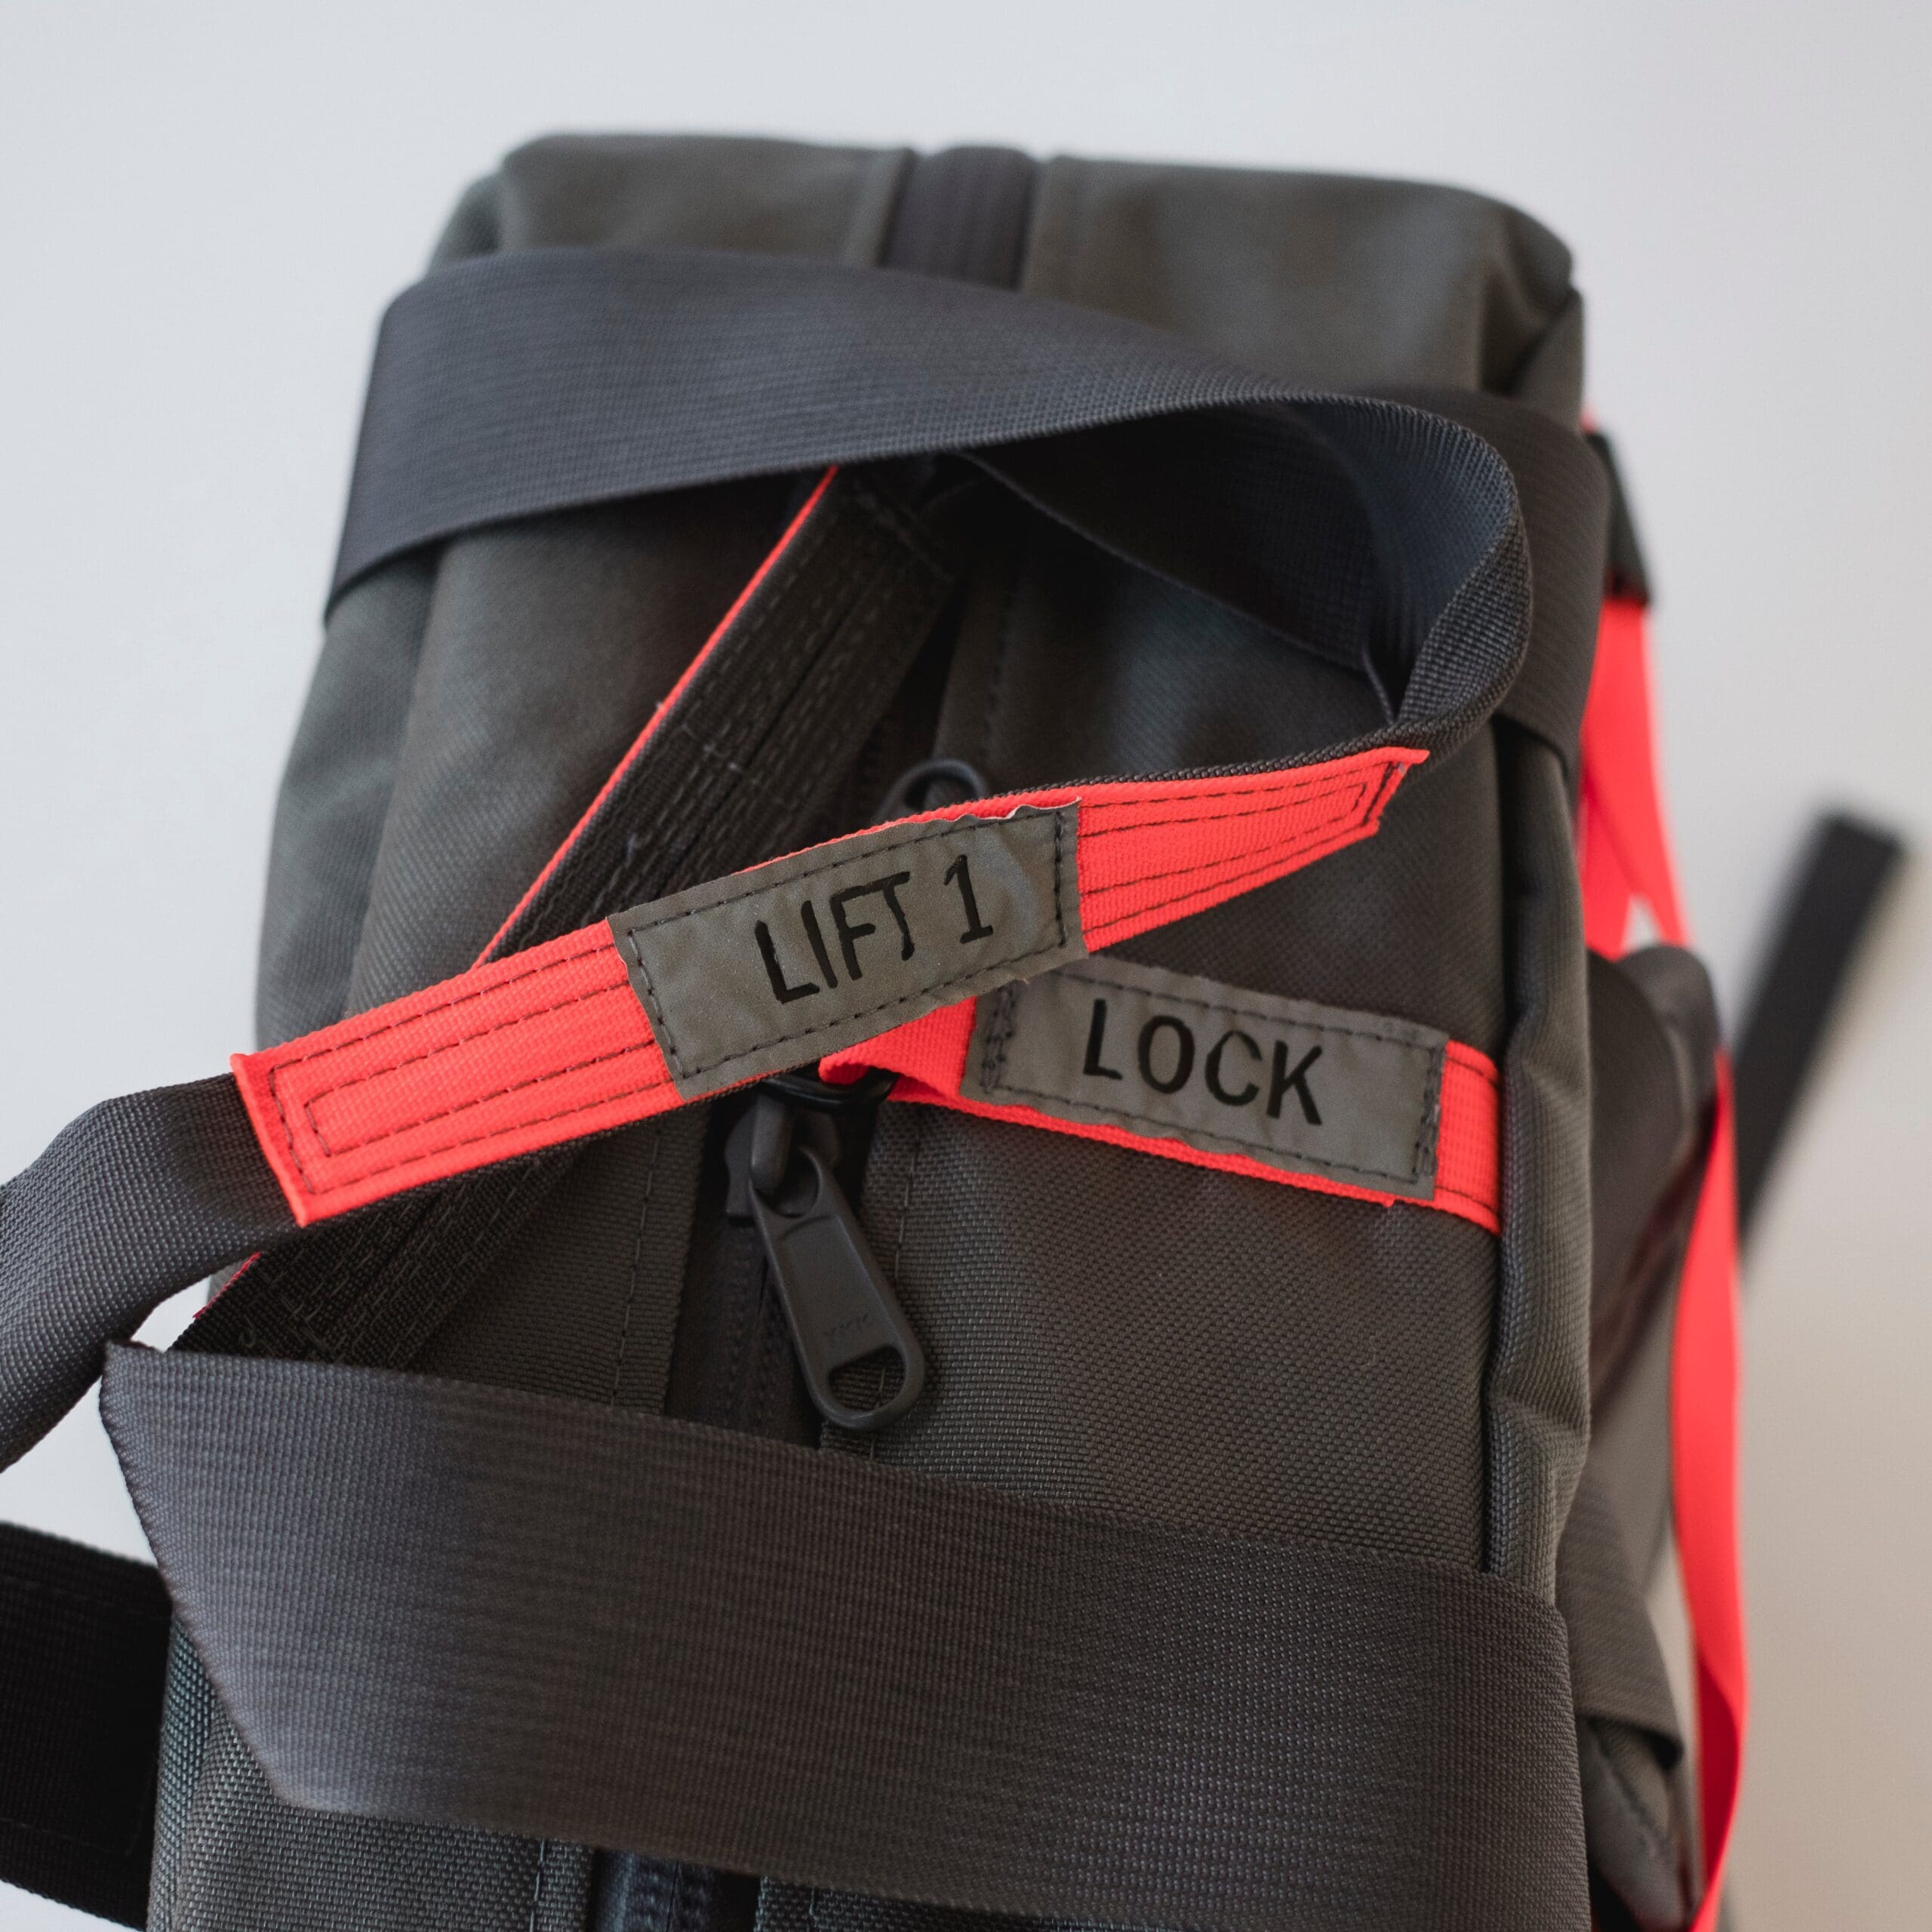 Lexa Backpack – CLN